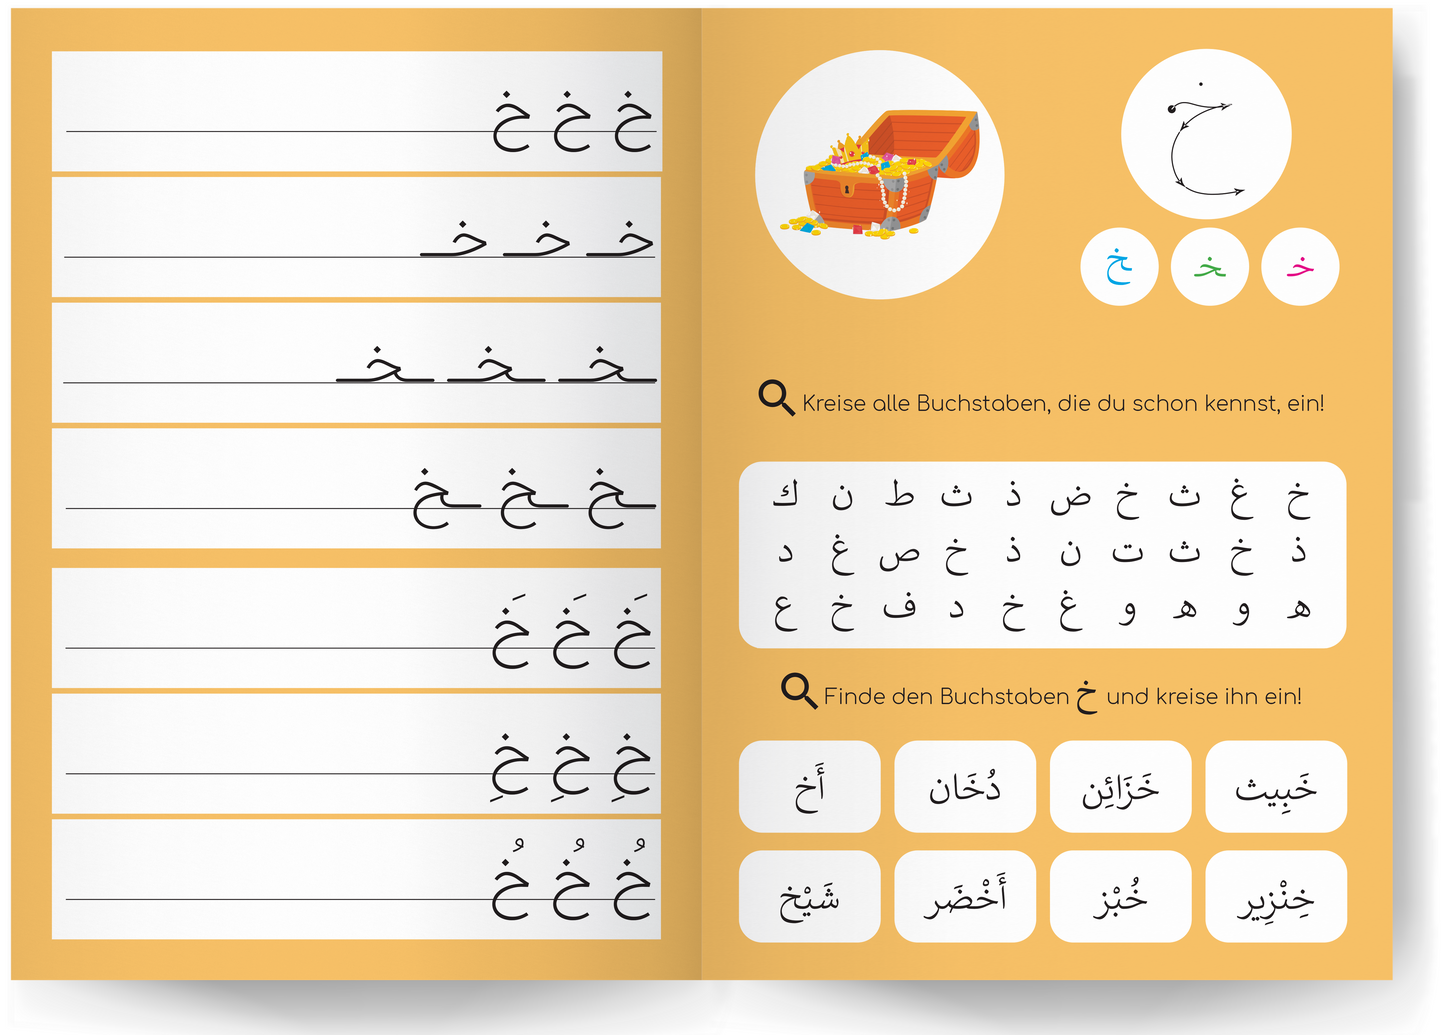 Ich lerne das arabische Alphabet – Arbeitsbuch inkl. Übungsfolie